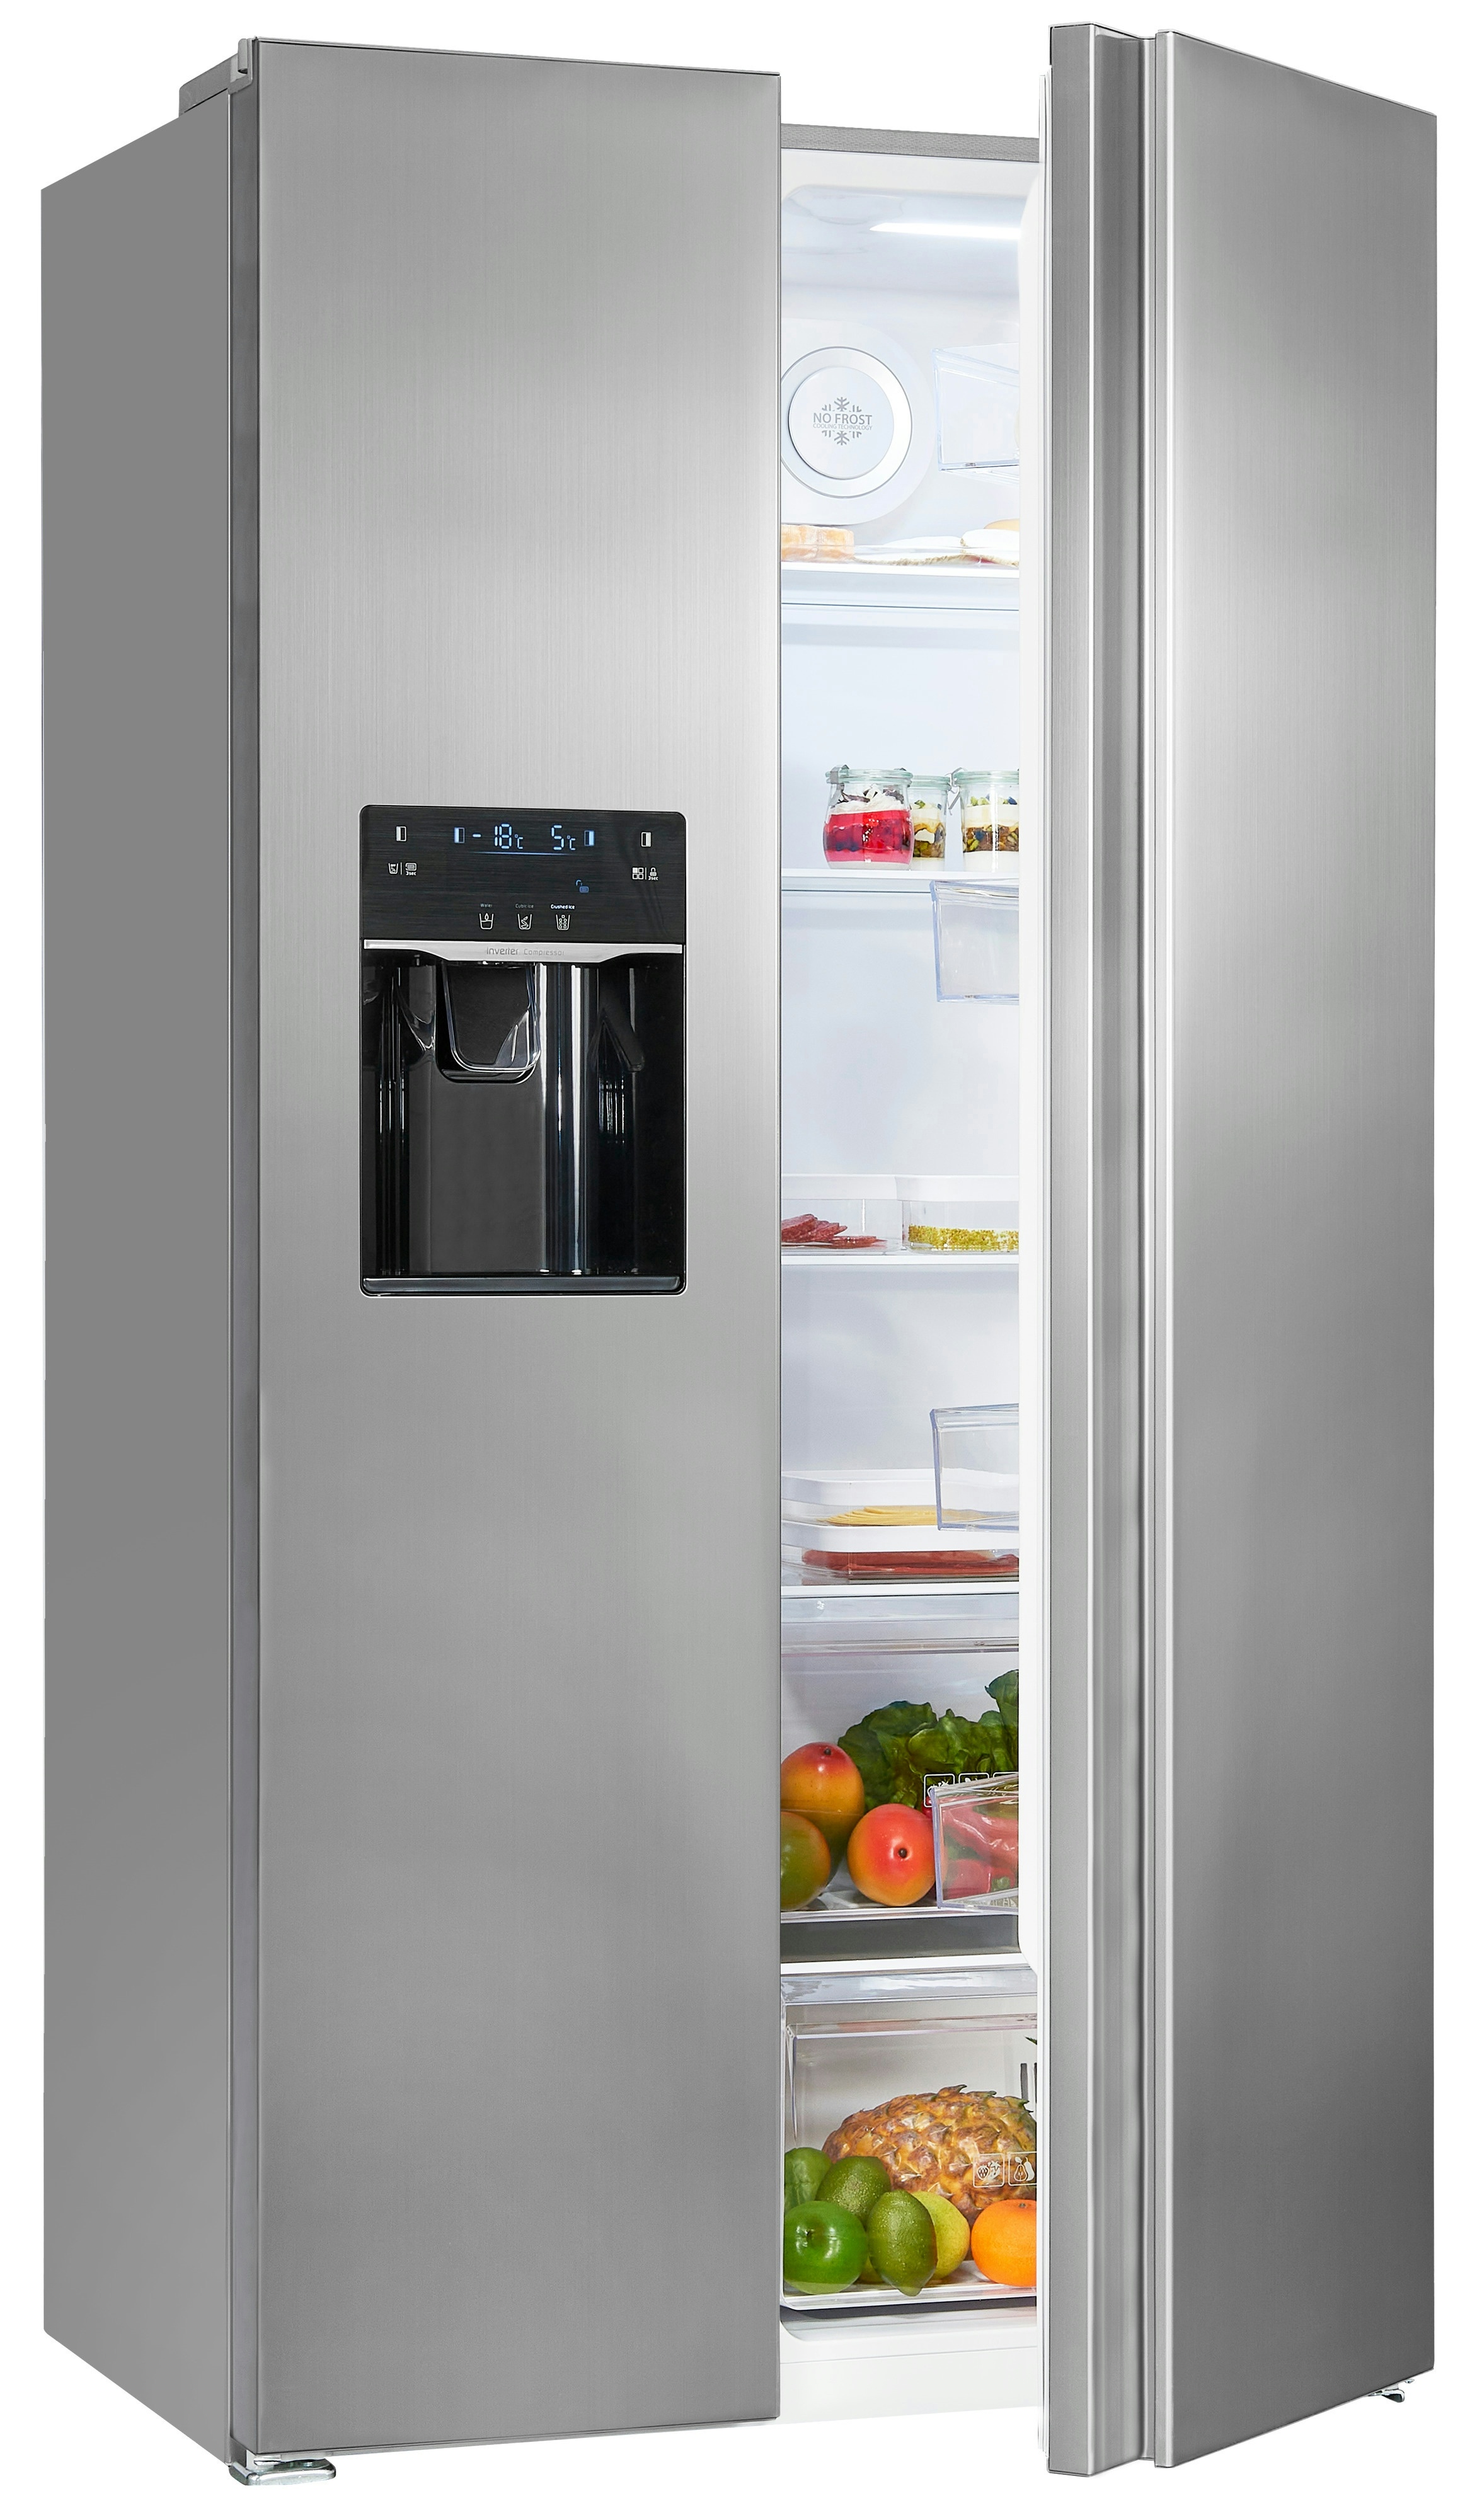 Kühlschrank Exquisit SBS 520-CF-040E